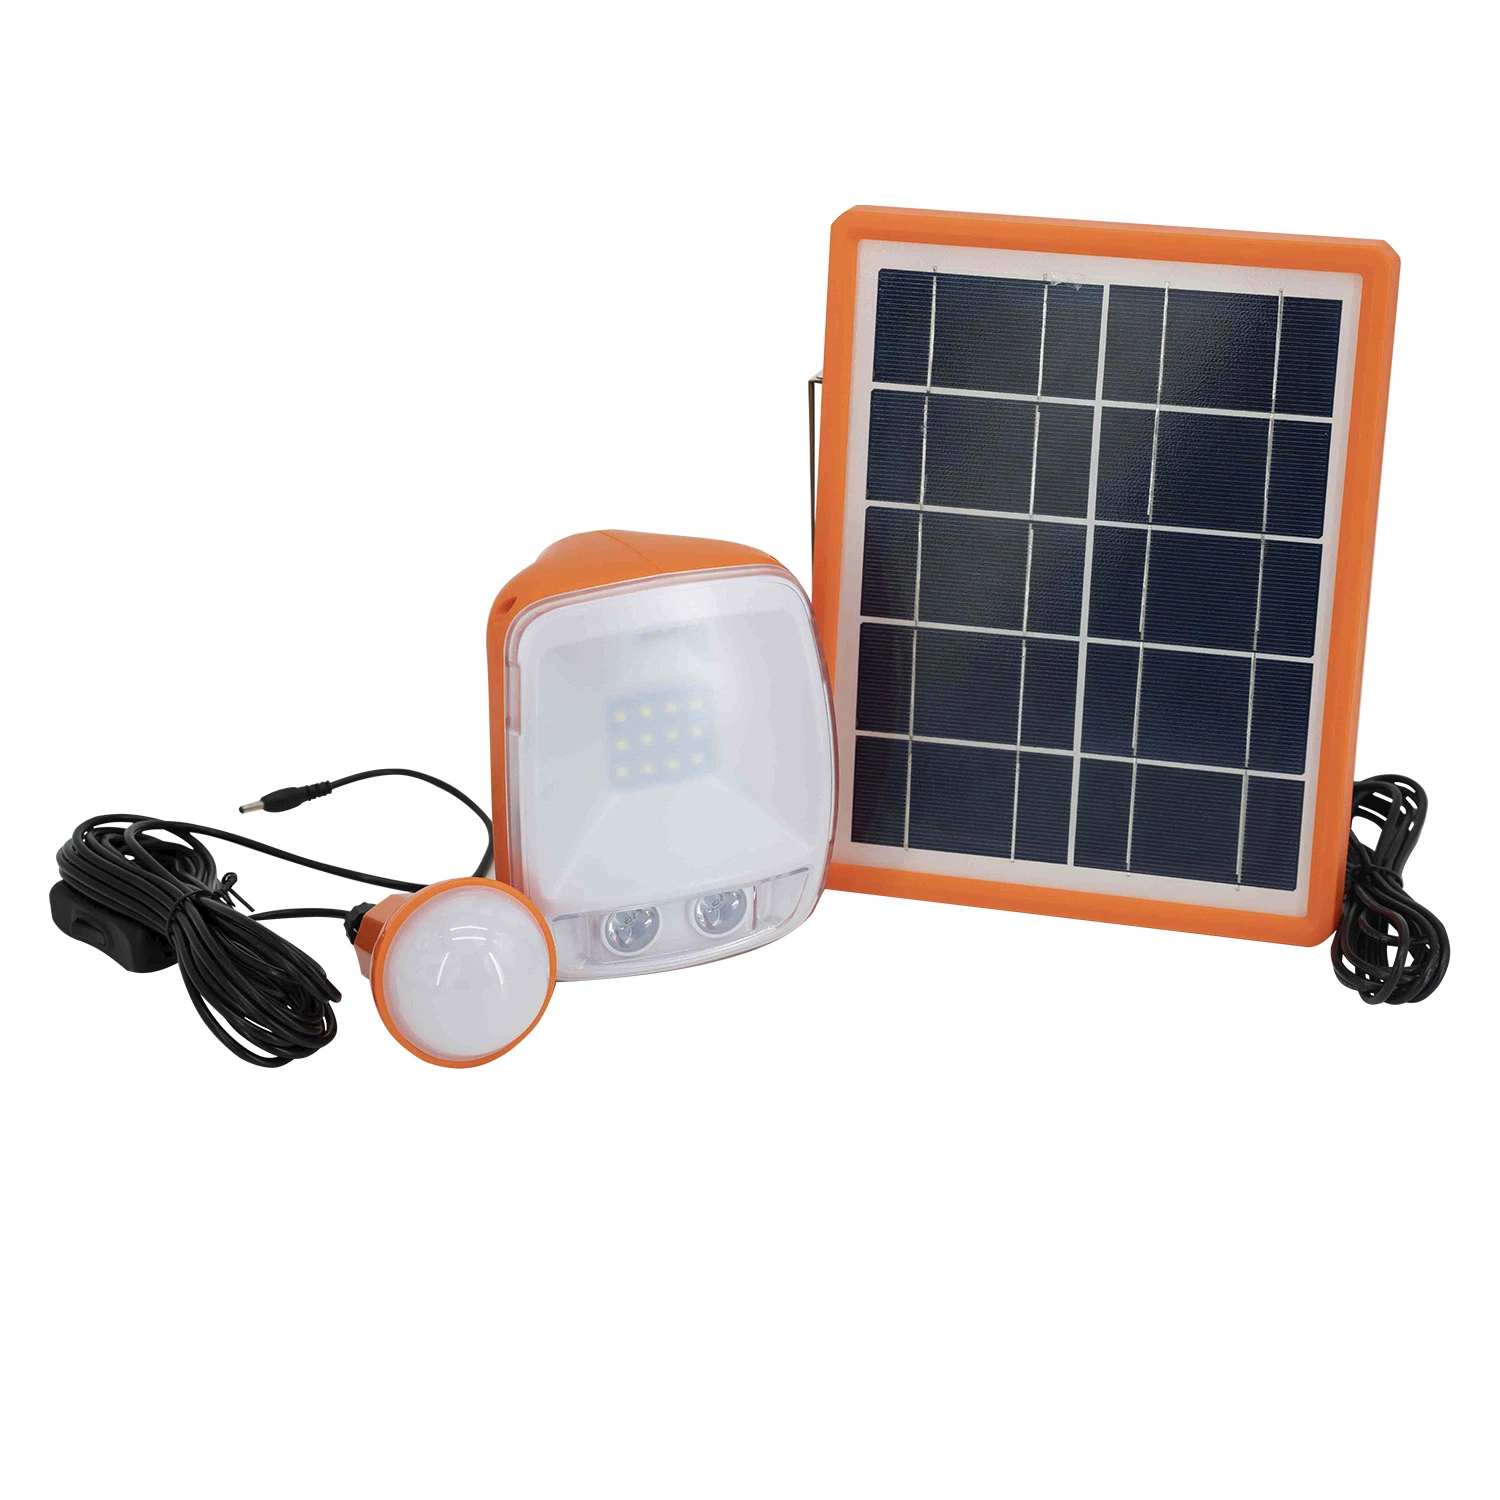 Tragbare kleine Solar-Laterne für den Heimgebrauch (Handy-Ladegerät / Taschenlampe)